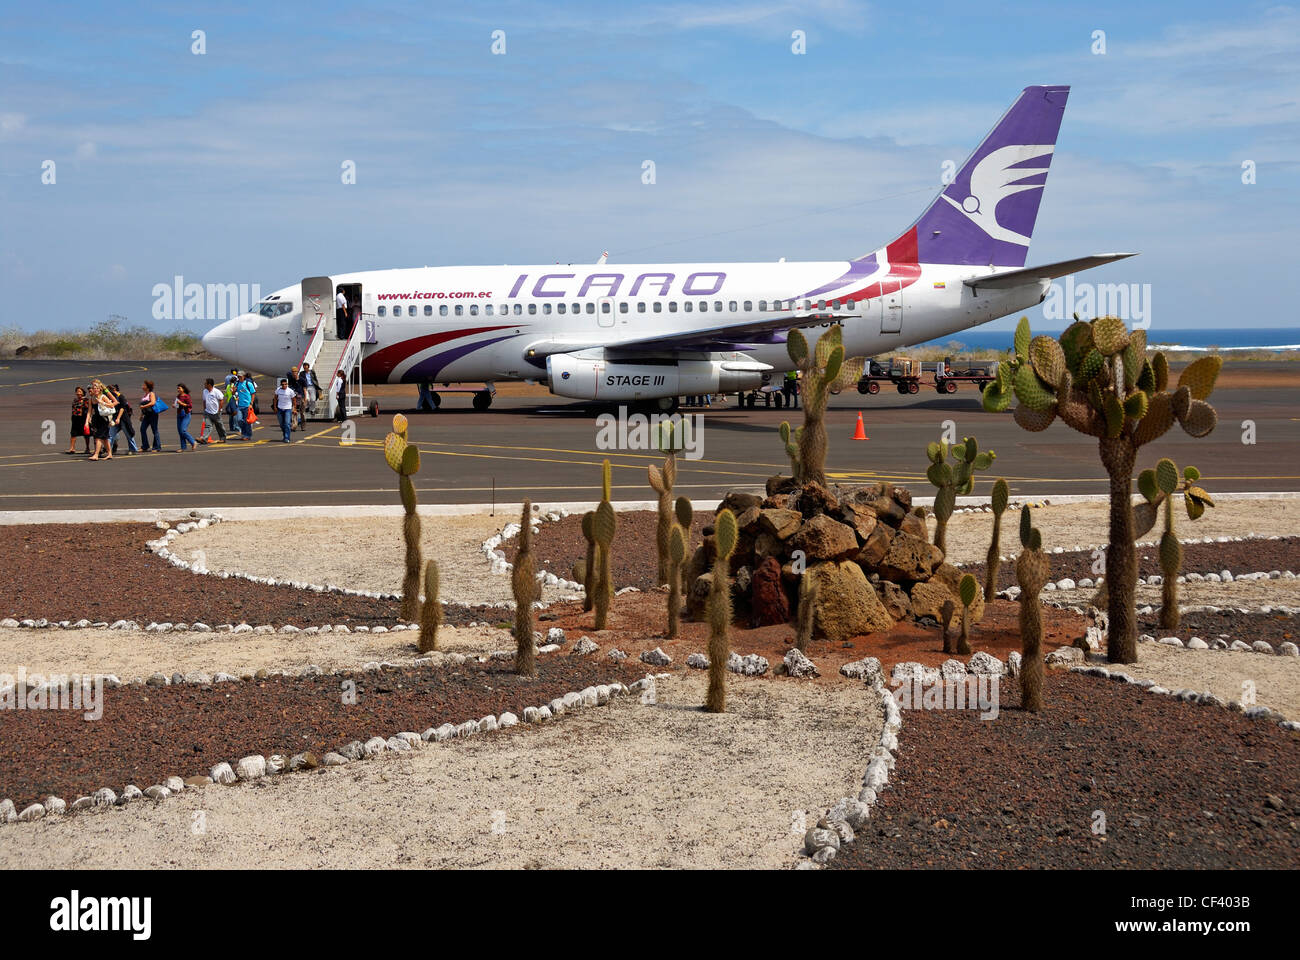 Passagiere, die verlassen Flugzeug auf dem Rollfeld, Flughafen von San Cristobal Insel, Galapagos-Inseln, Ecuador Stockfoto